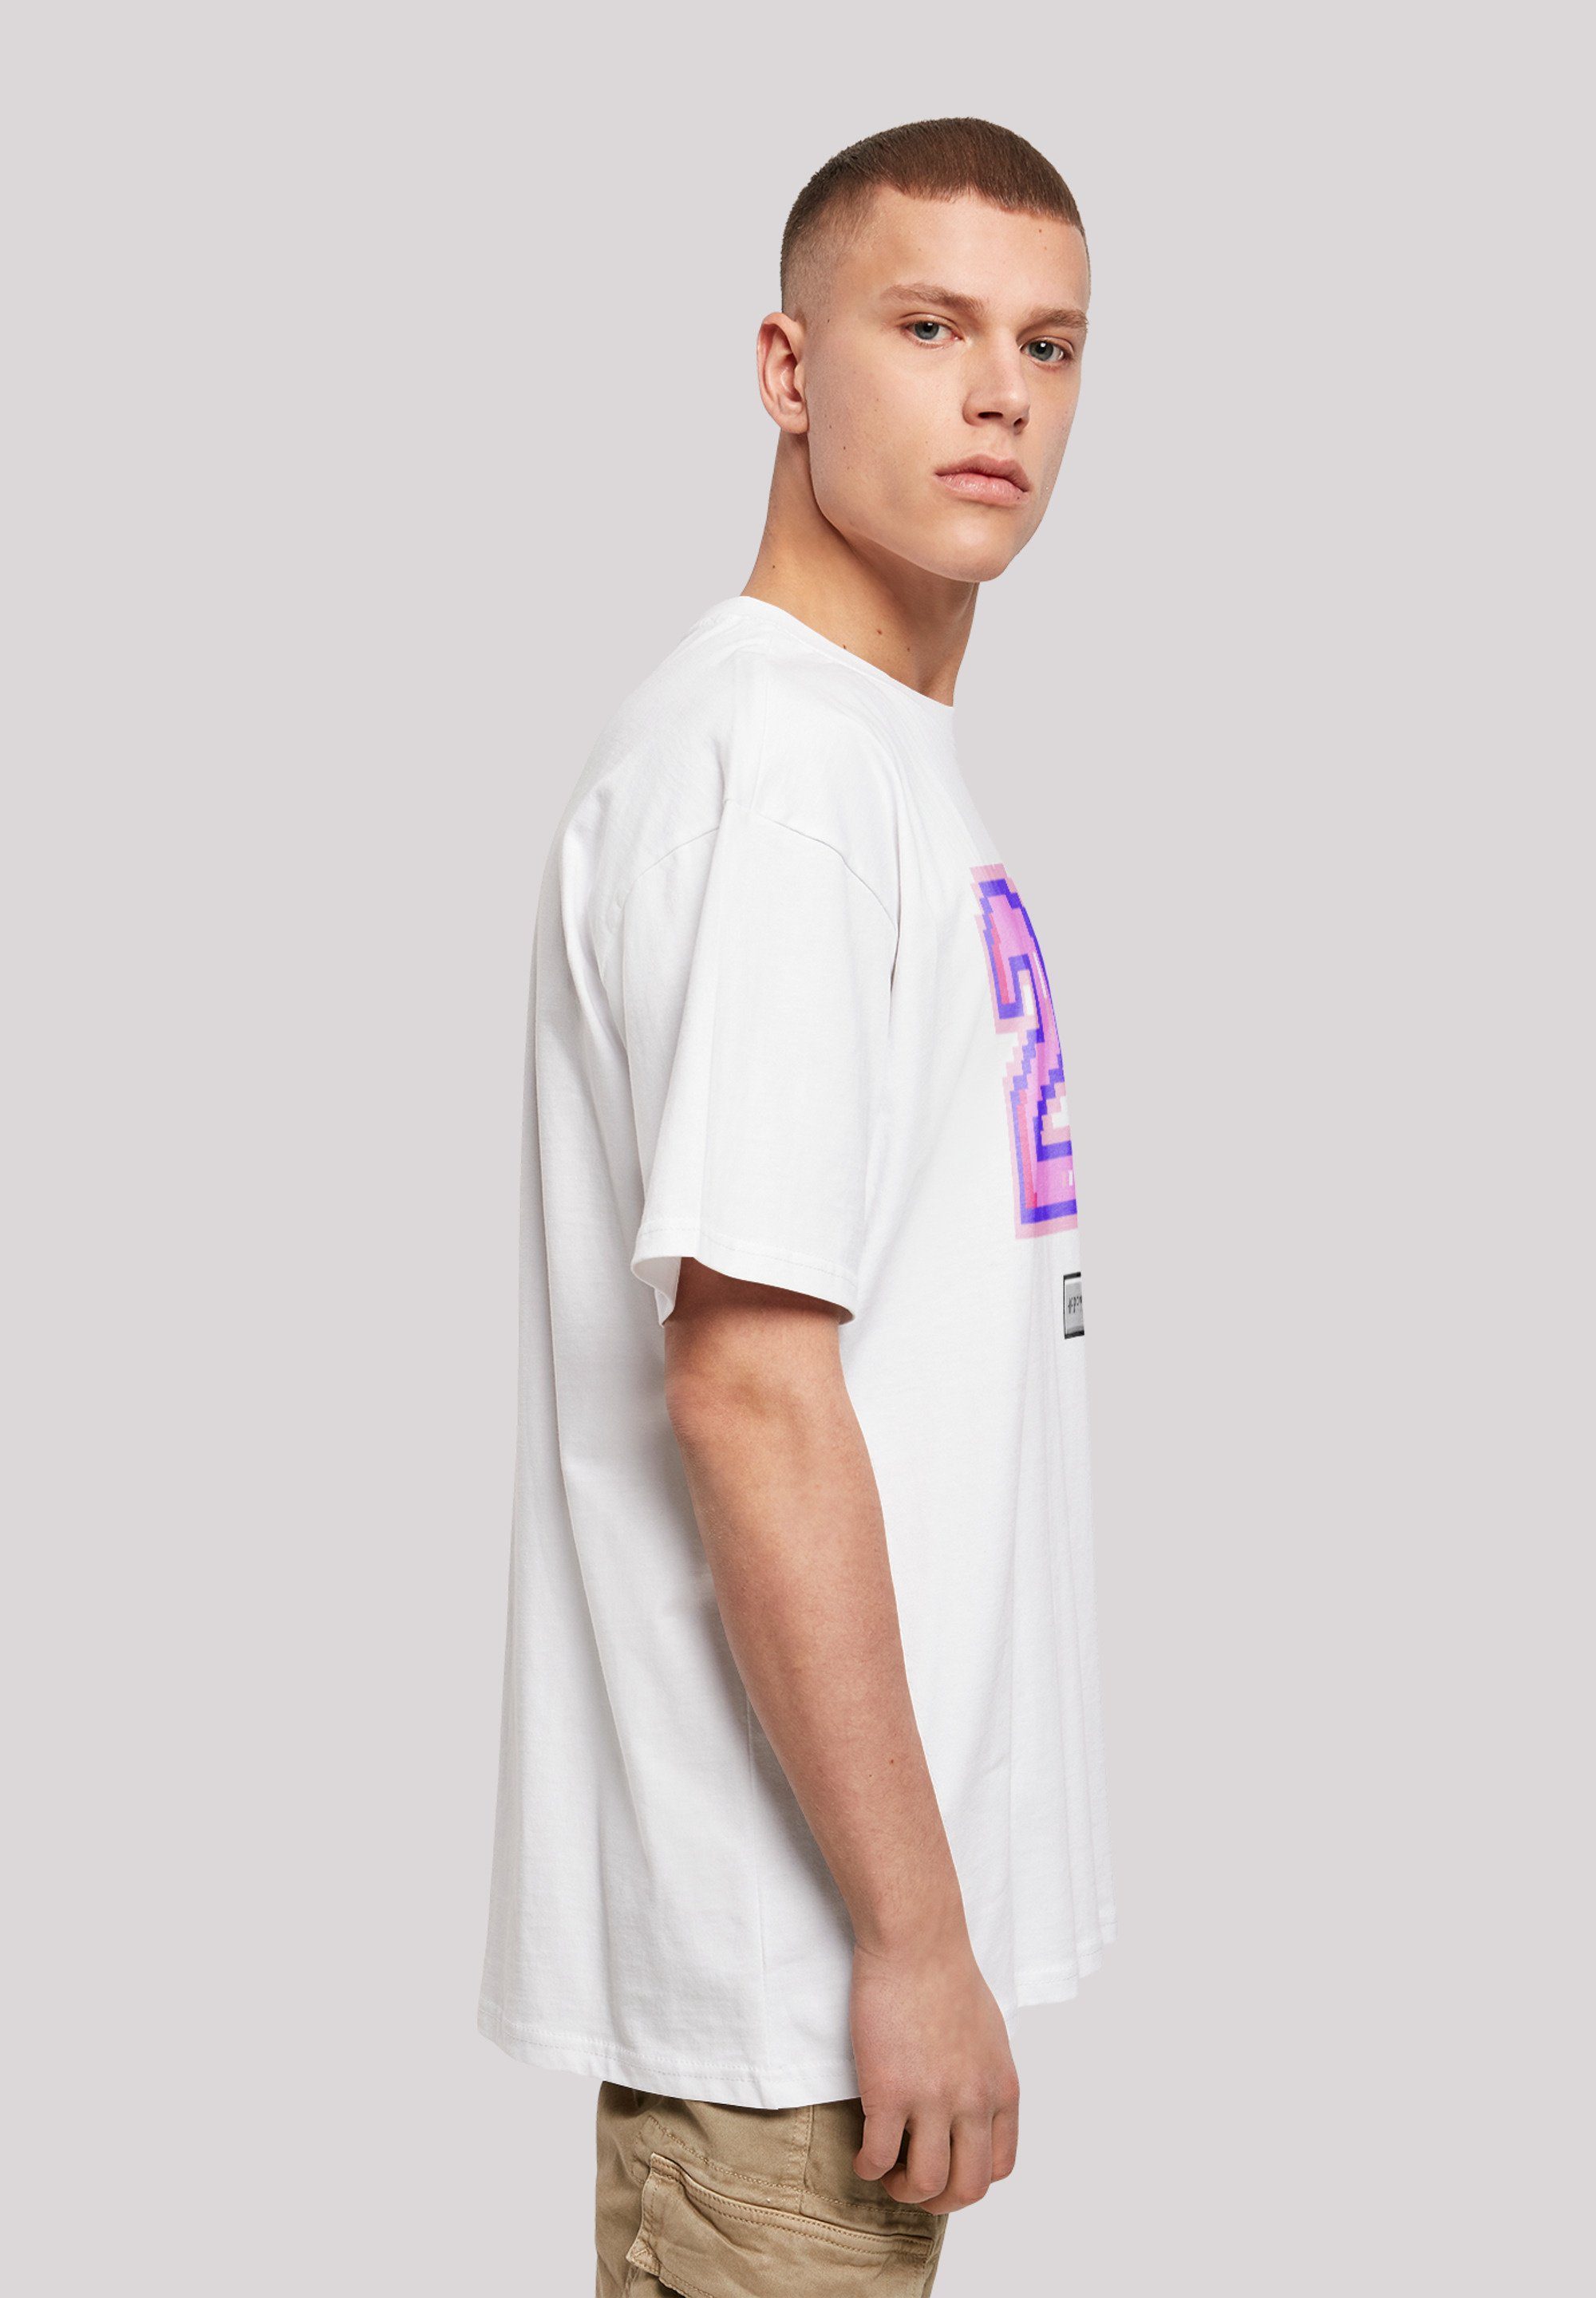 23 F4NT4STIC Pixel T-Shirt weiß Print pink